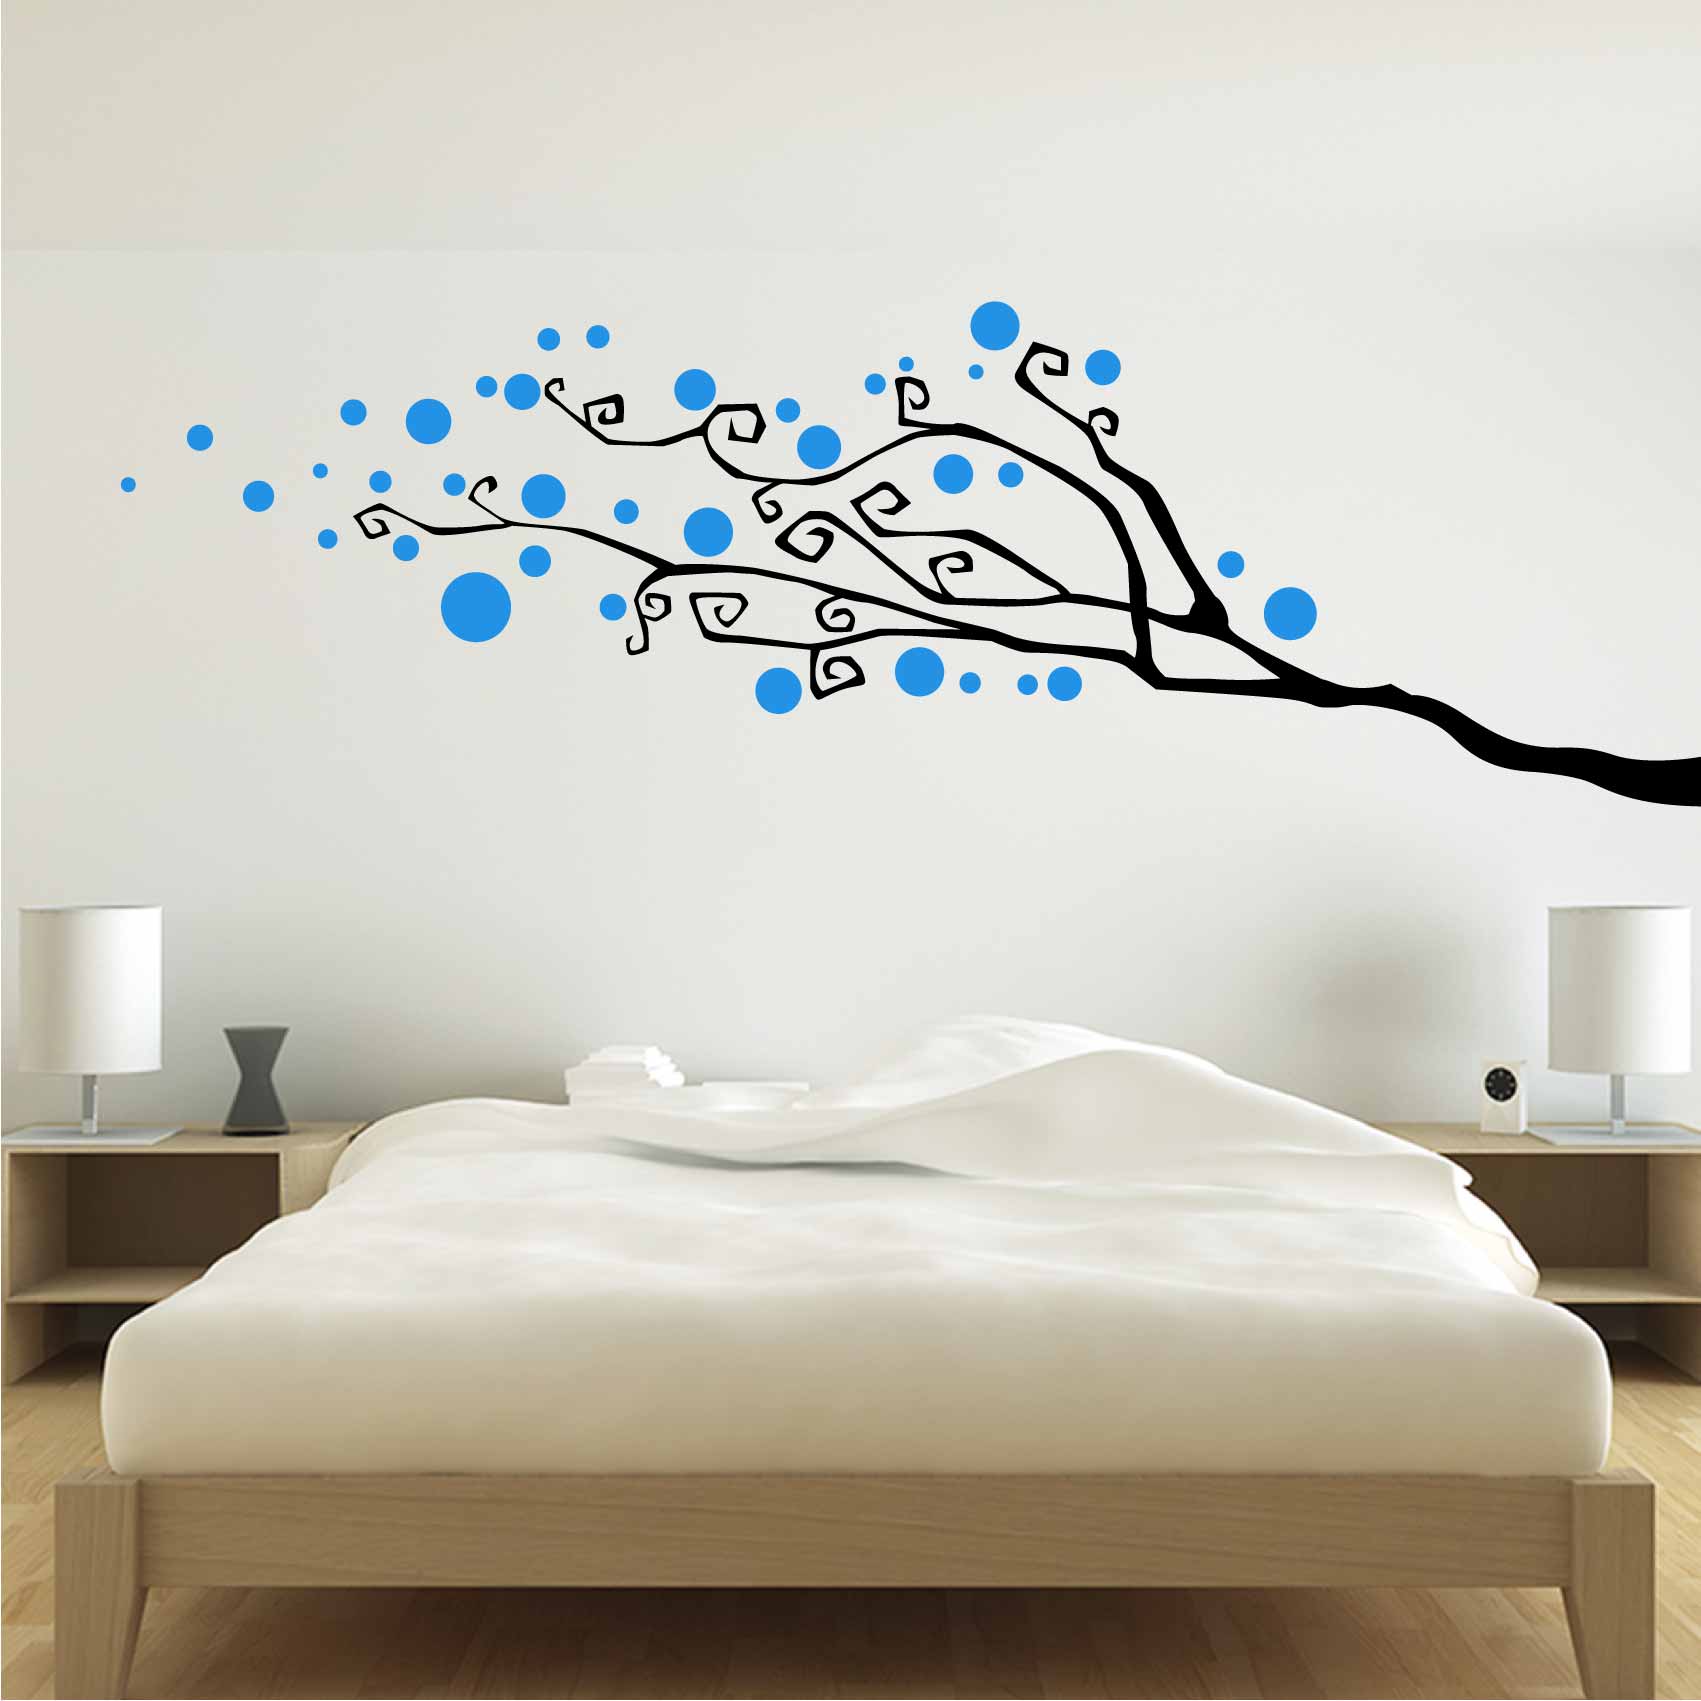 stickers-mural-branche-ref2branche-stickers-muraux-branche-autocollant-deco-salon-chambre-cuisine-sticker-mural-branches